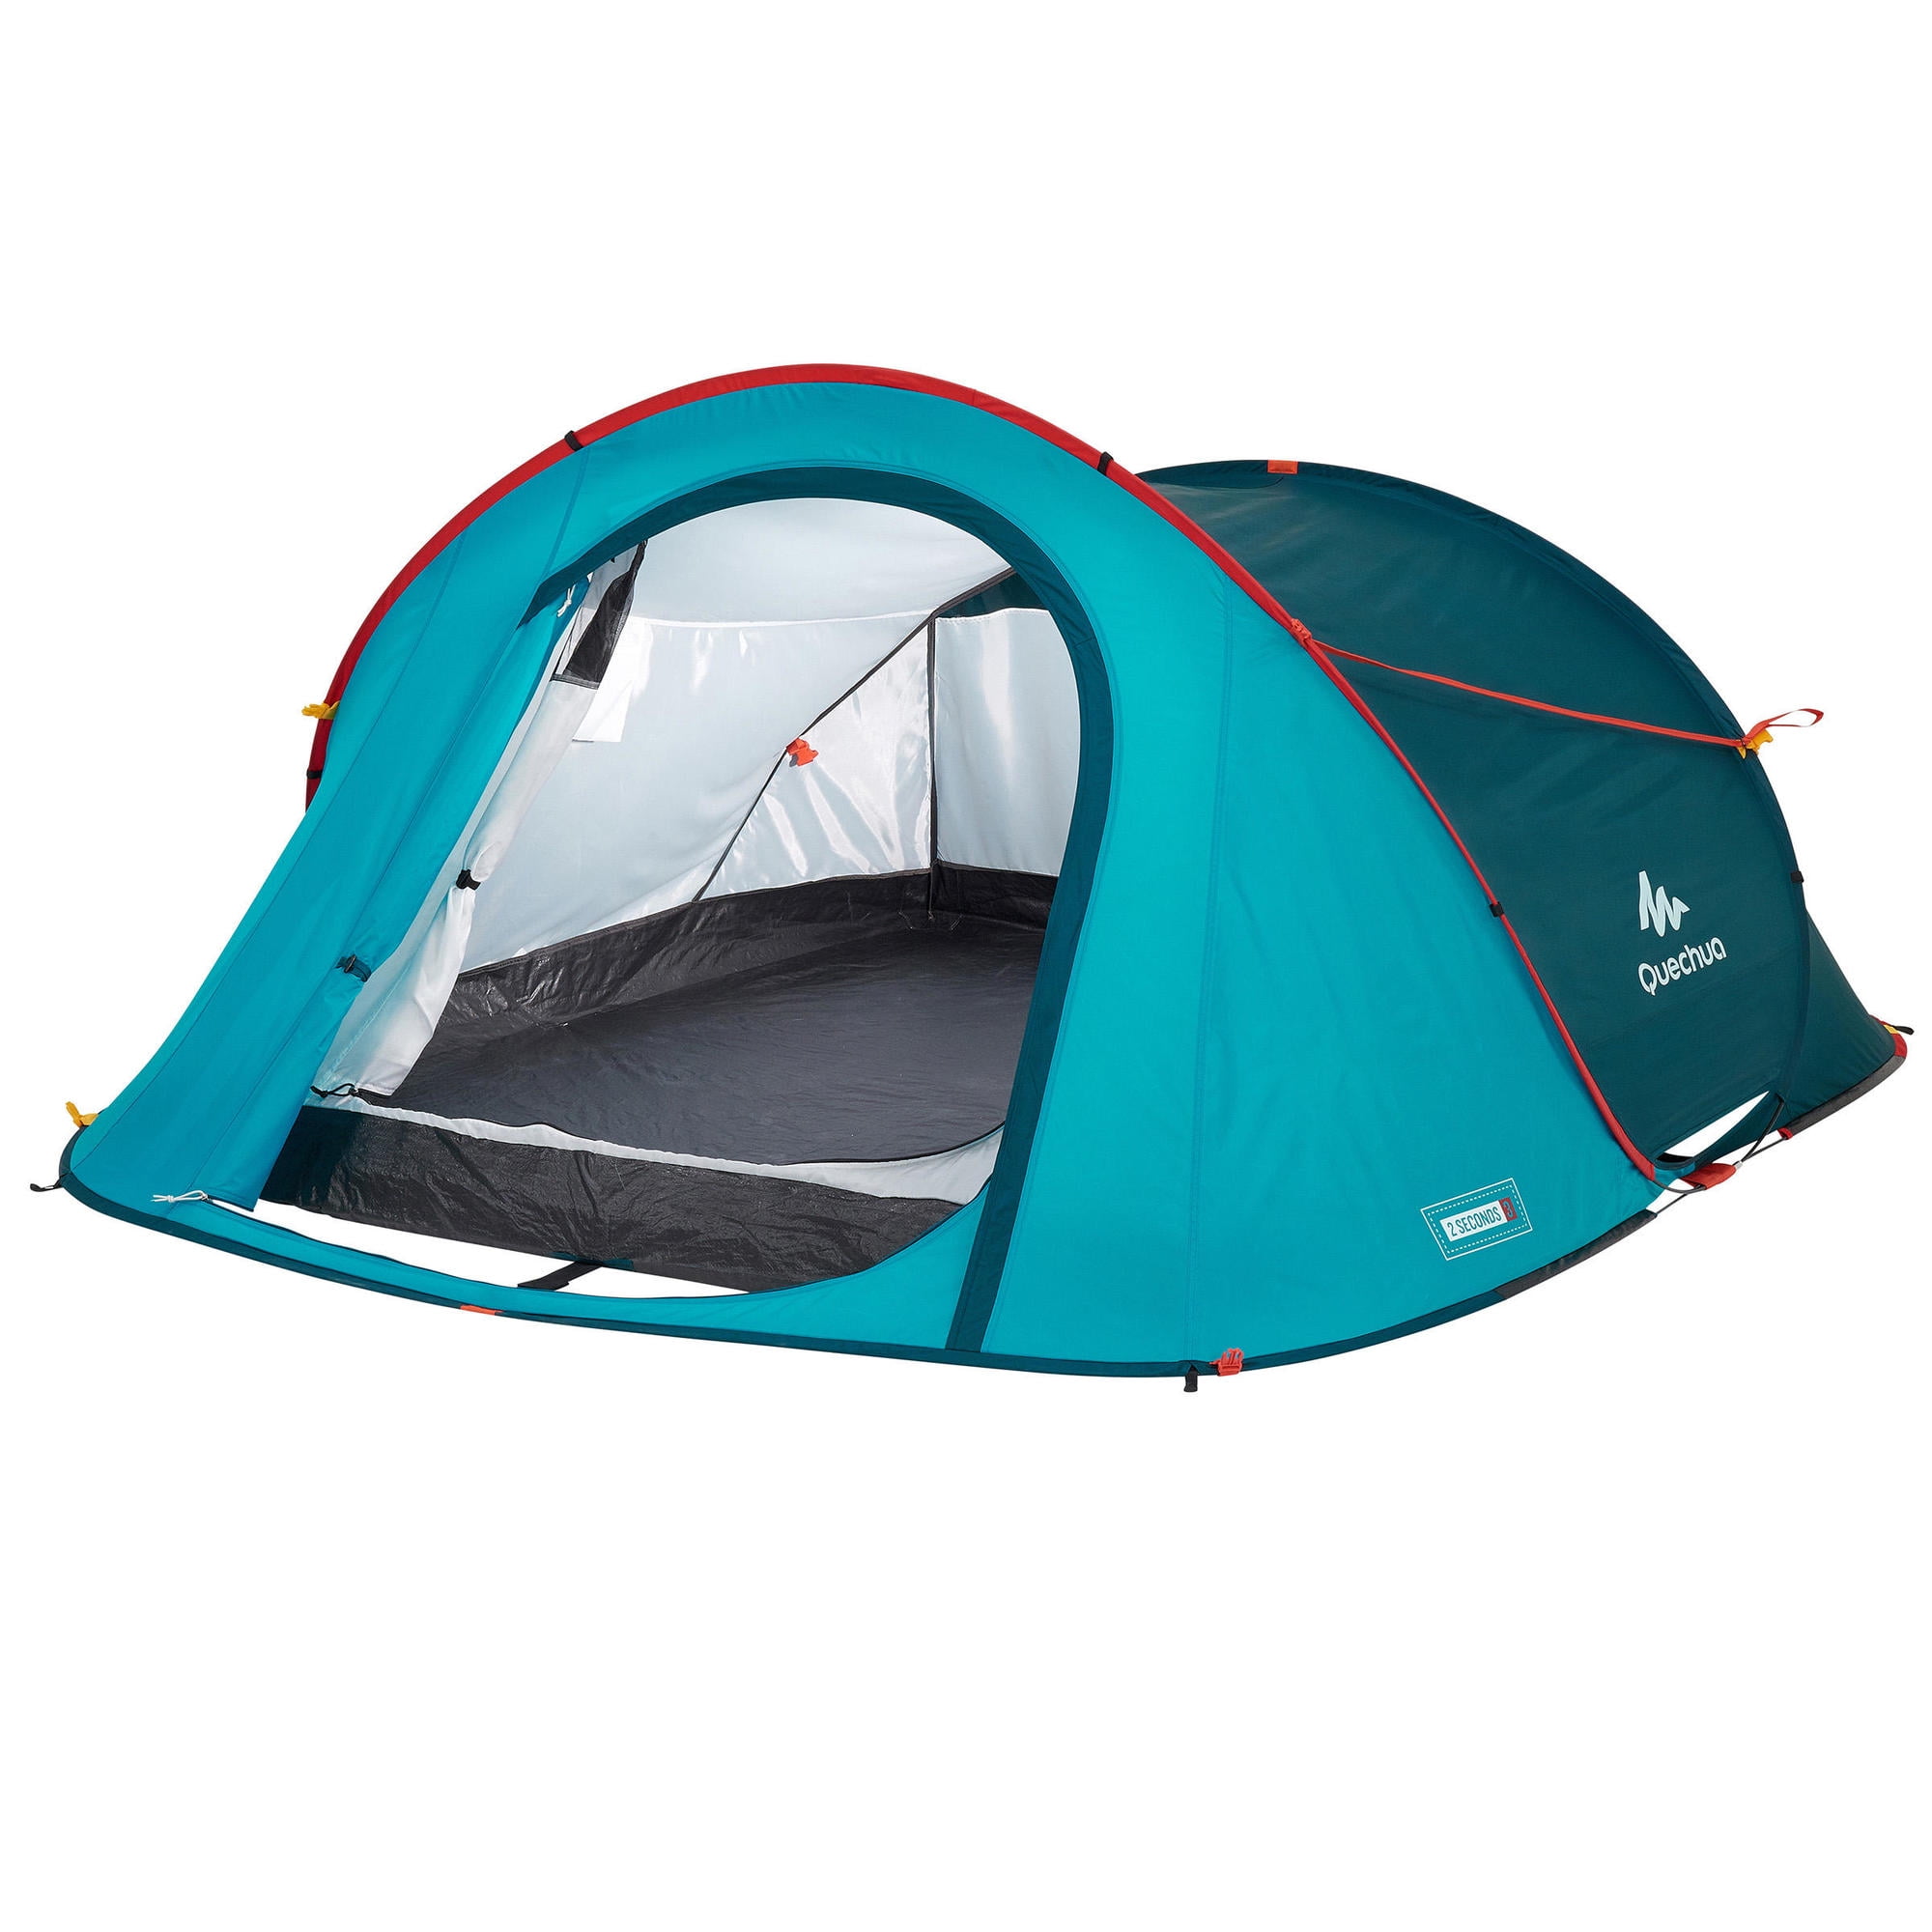 Quechua Second, Waterproof Pop Camping Tent, 3 Person - Walmart.com